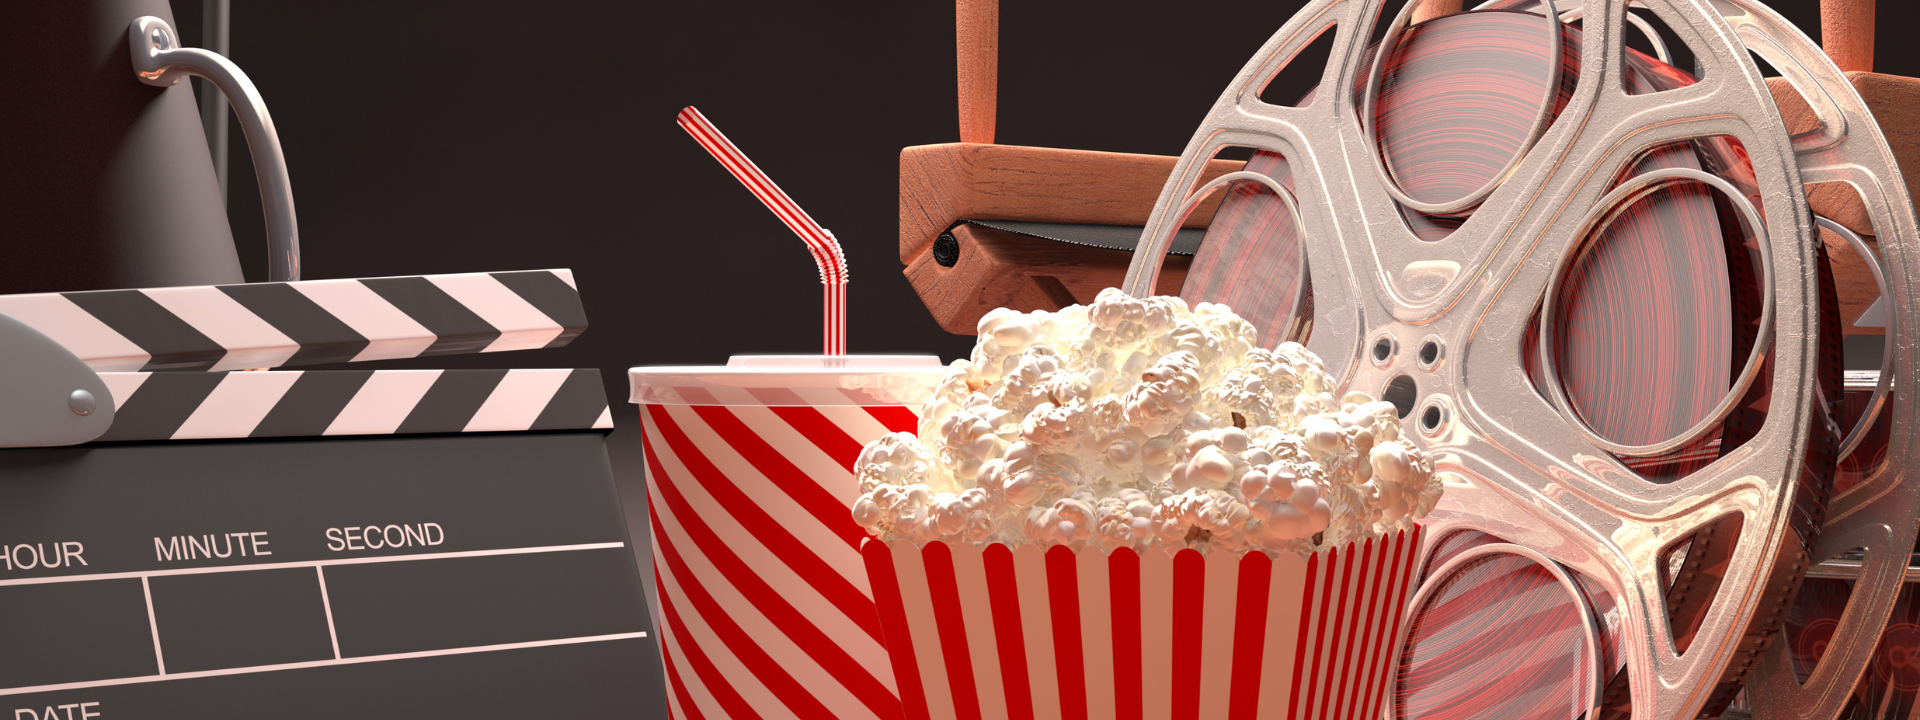 movie sate, popcorn, film reel